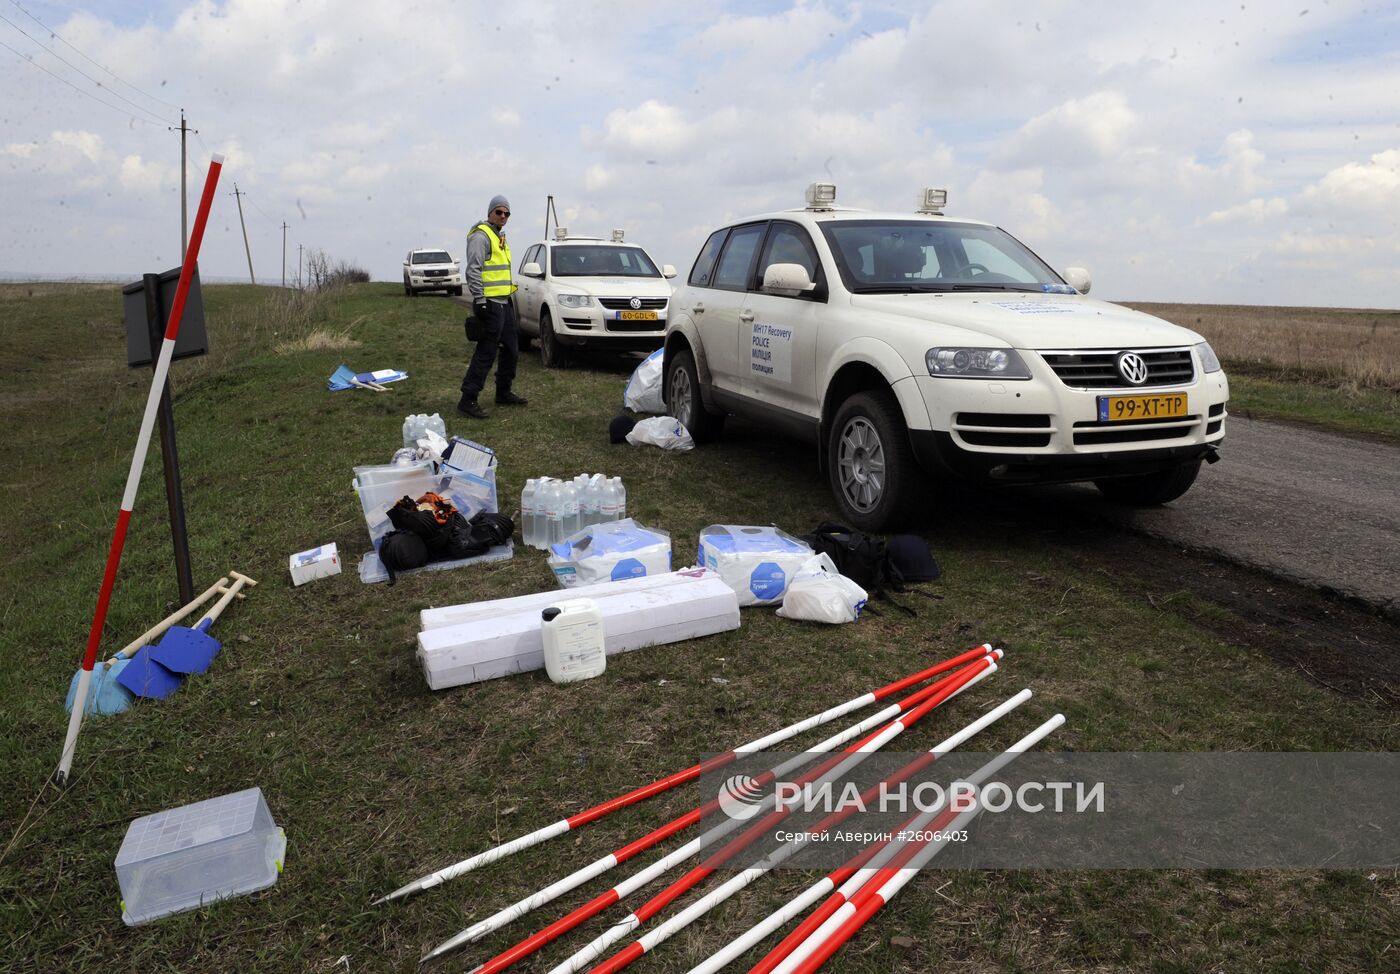 Эксперты из Нидерландов и Малайзии посетили место крушения "Боинга" в Донецкой области